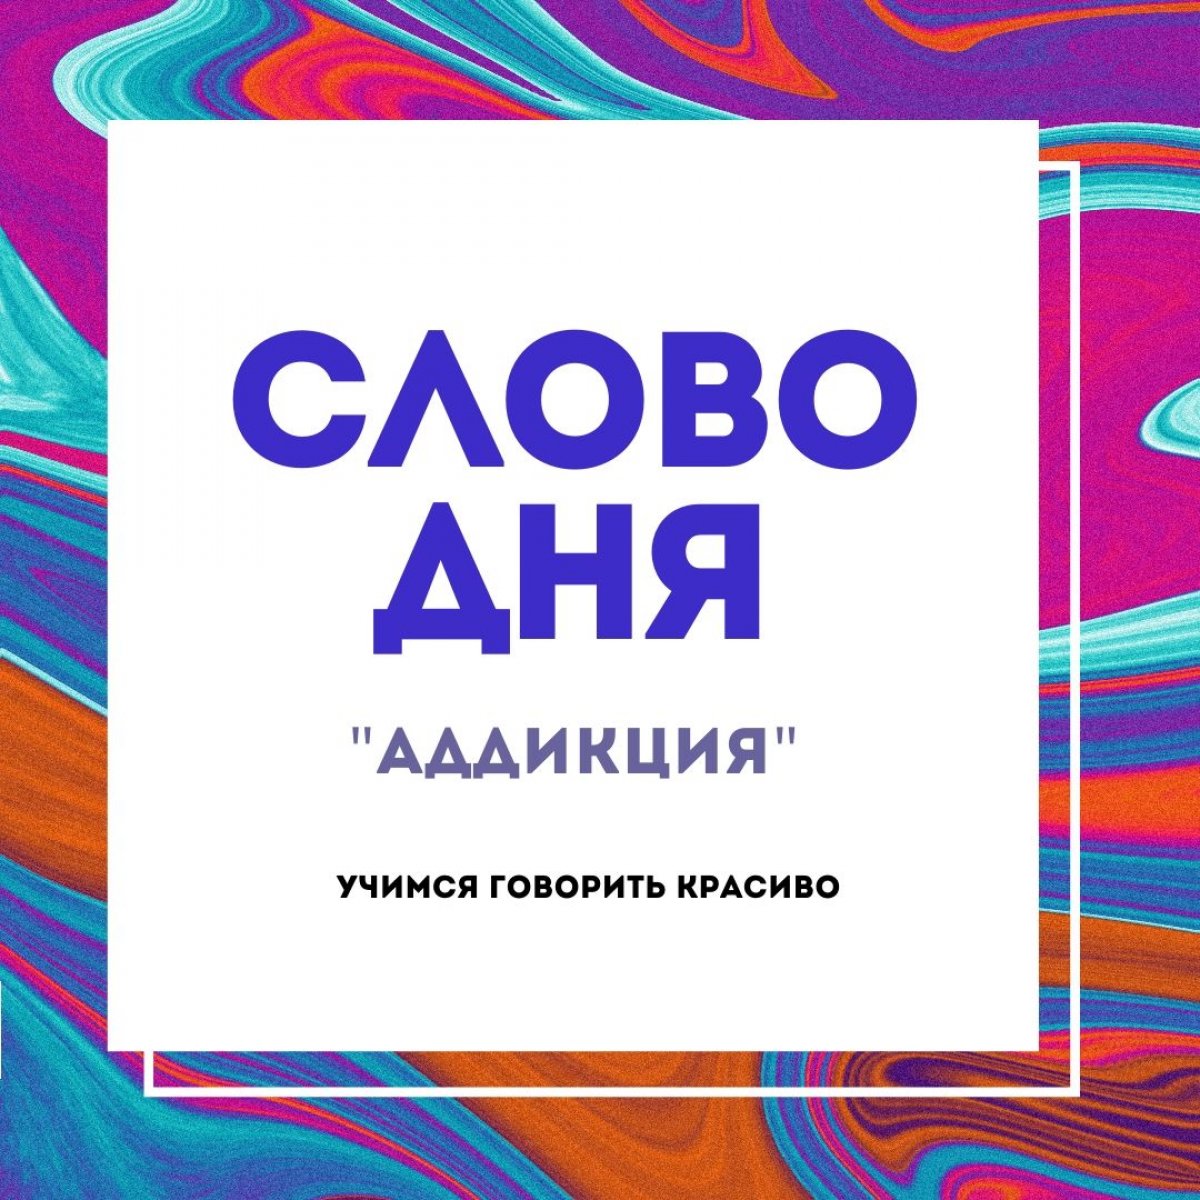 Интересные слова и фразы русского языка